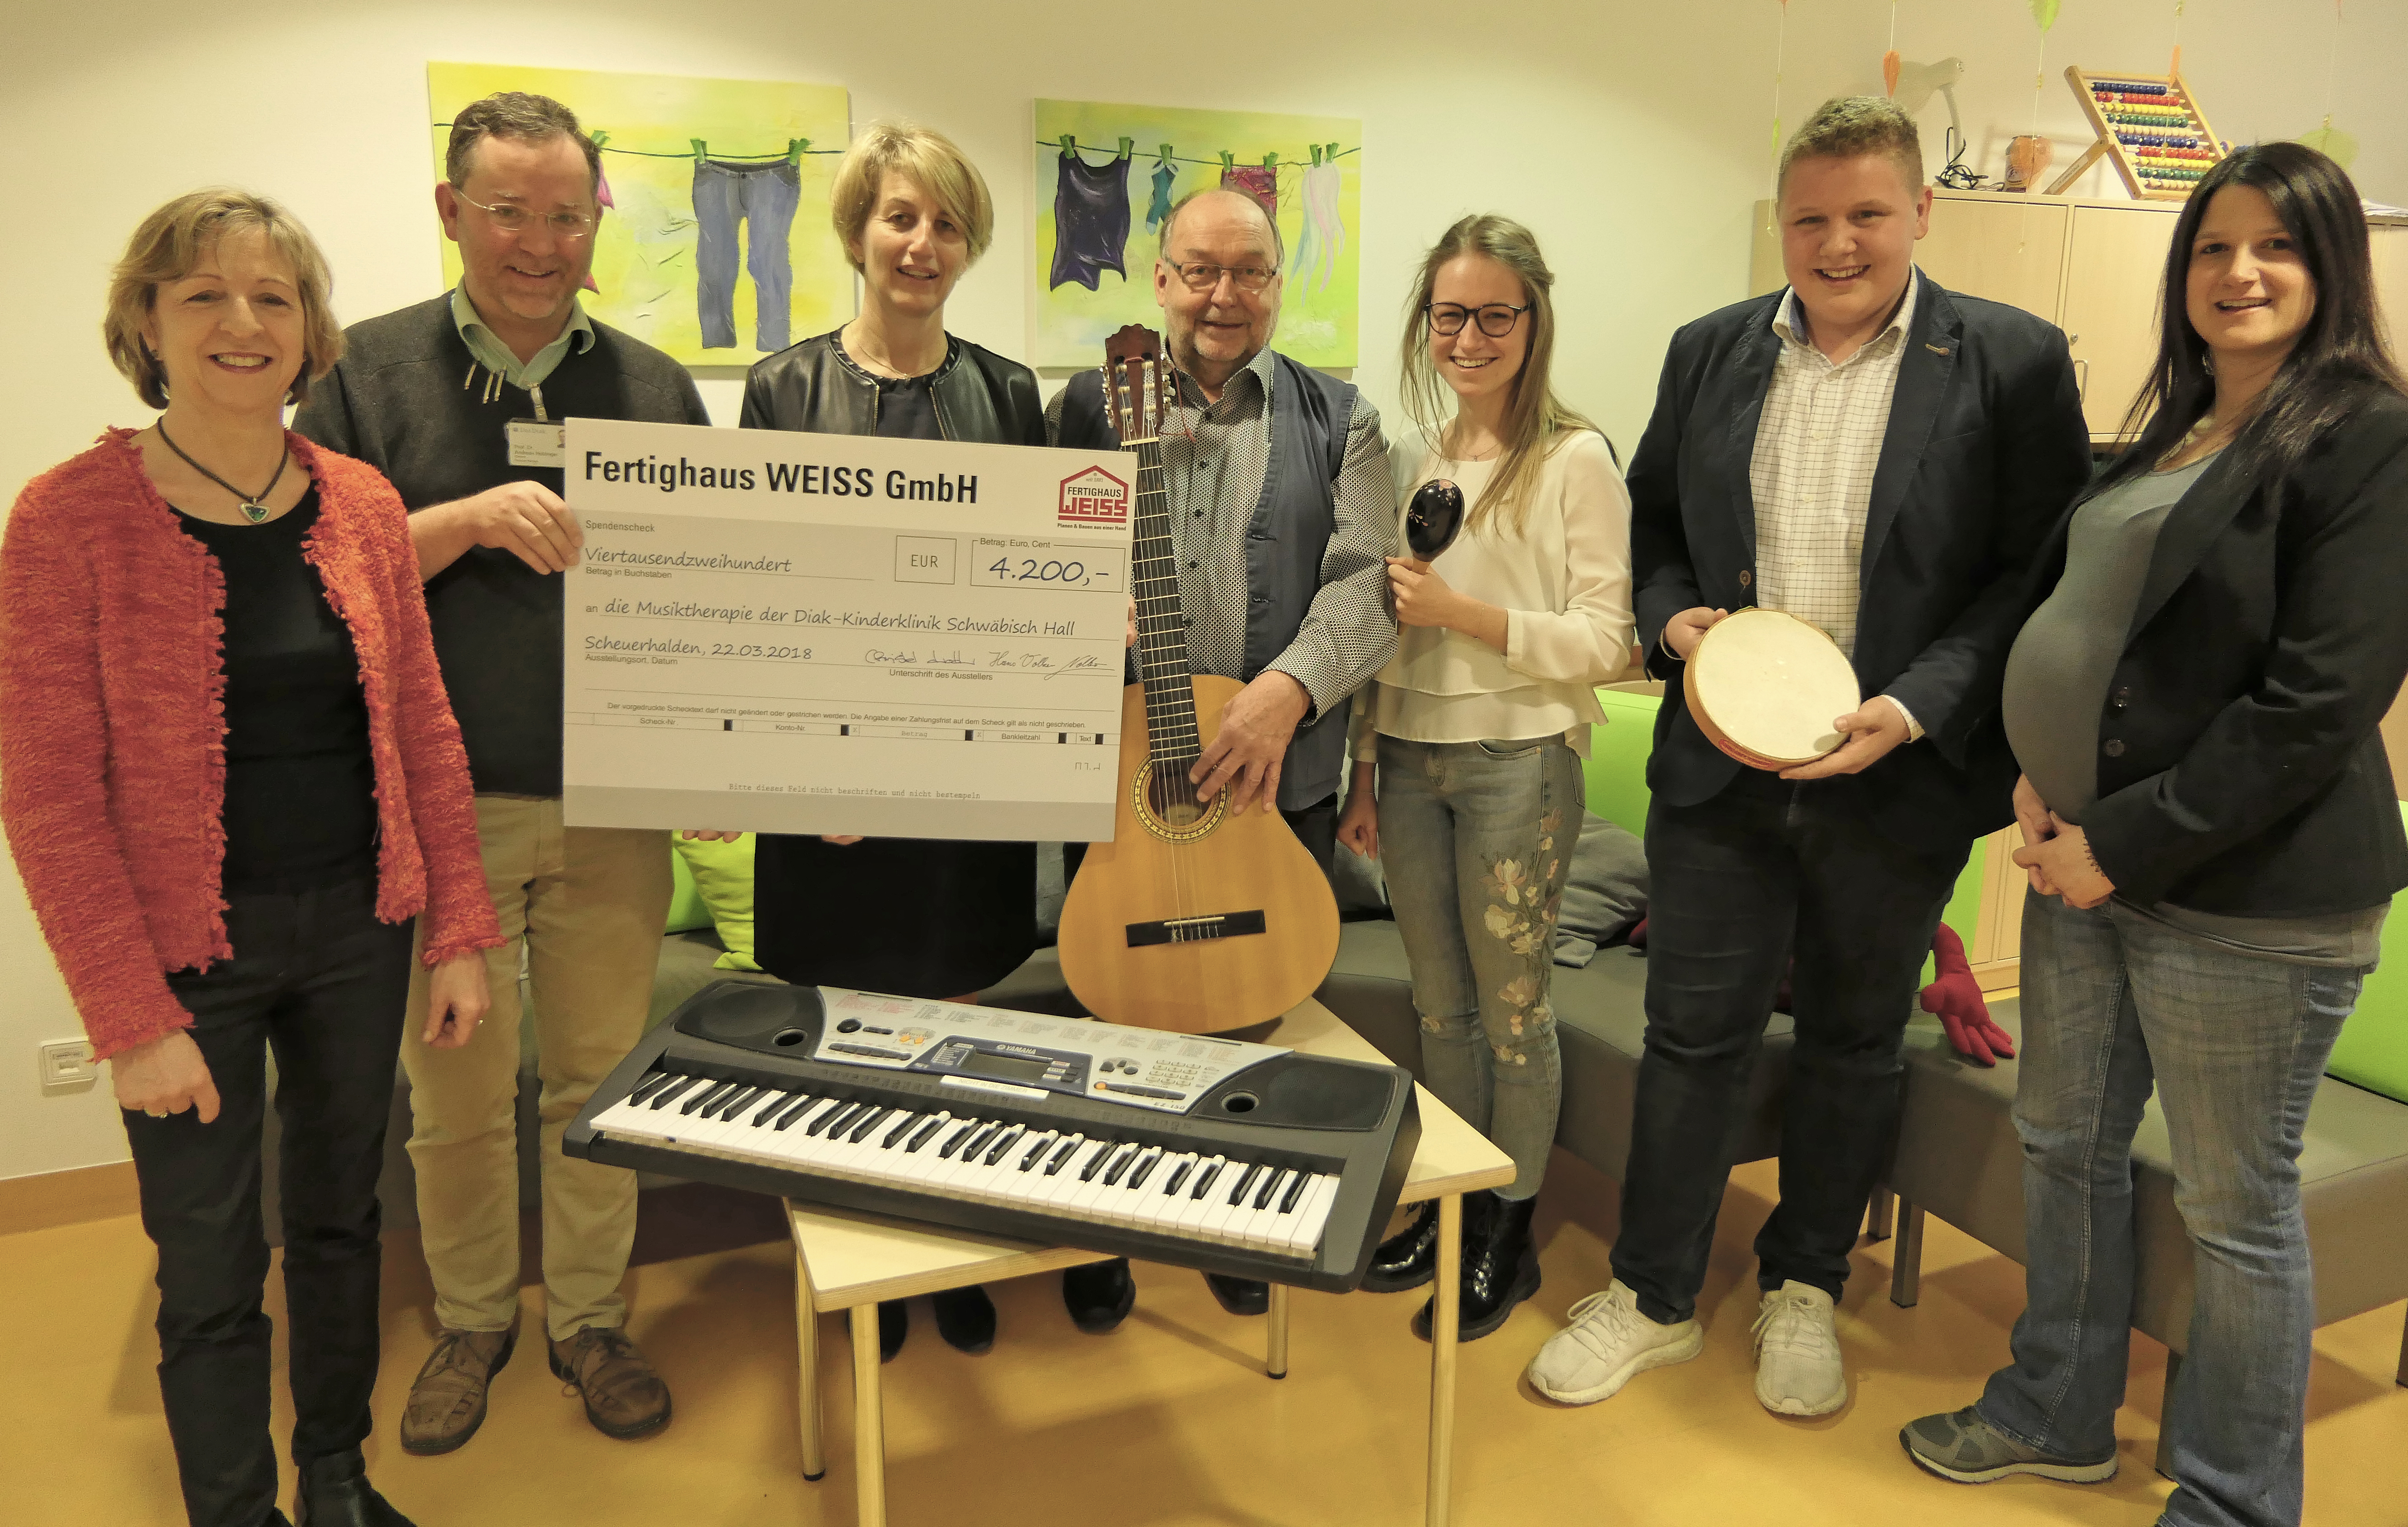 Fertighaus Weiss spendet 4.200 Euro für die Musiktherapie